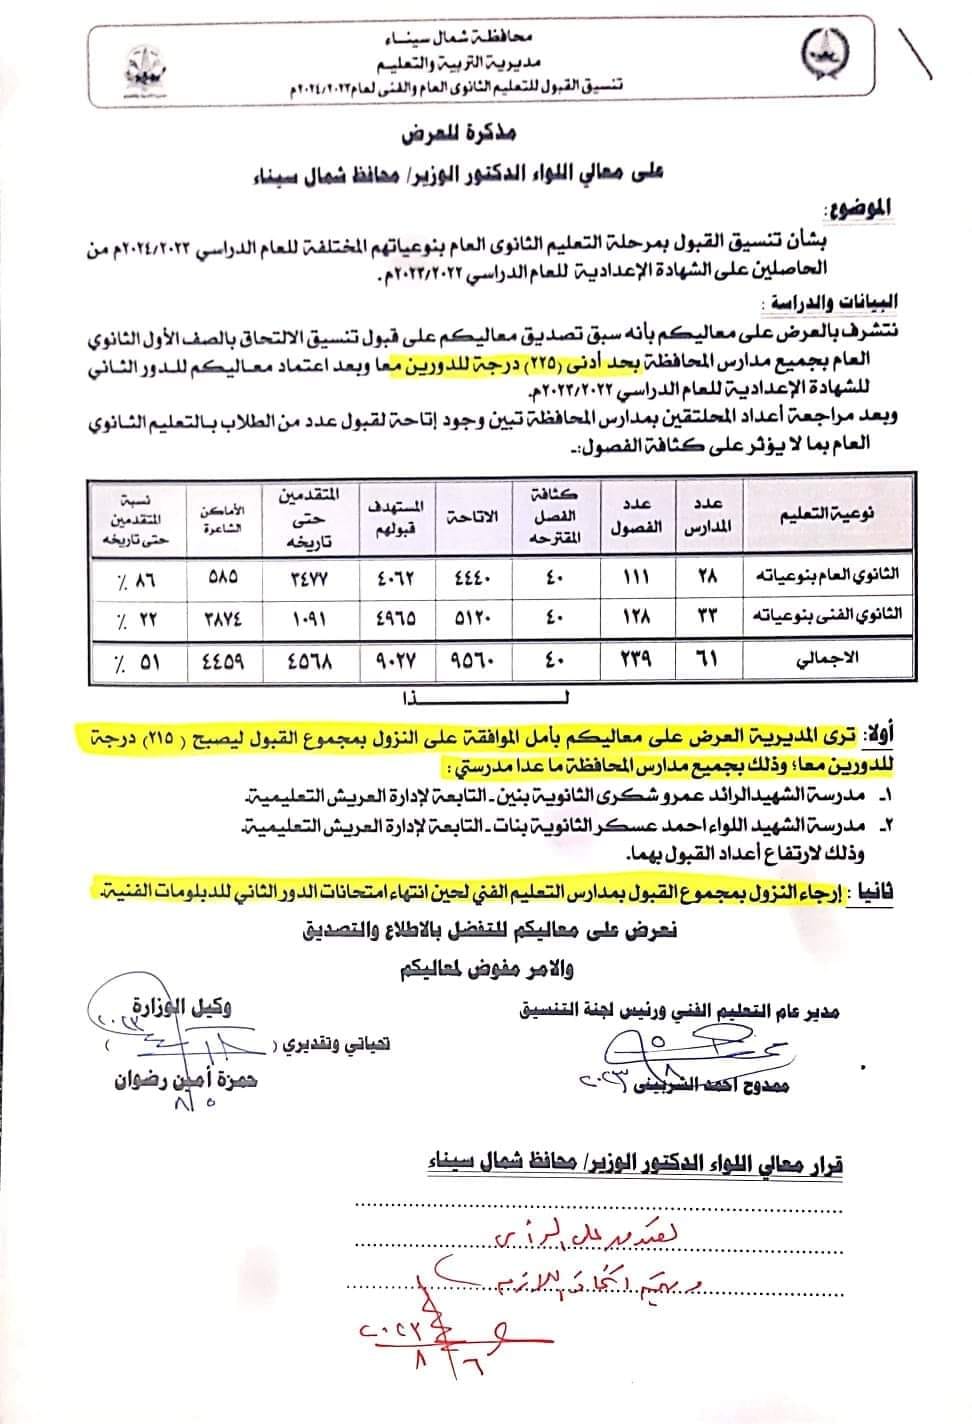  تنسيق القبول بأولى ثانوي 2023 محافظة شمال سيناء 22128